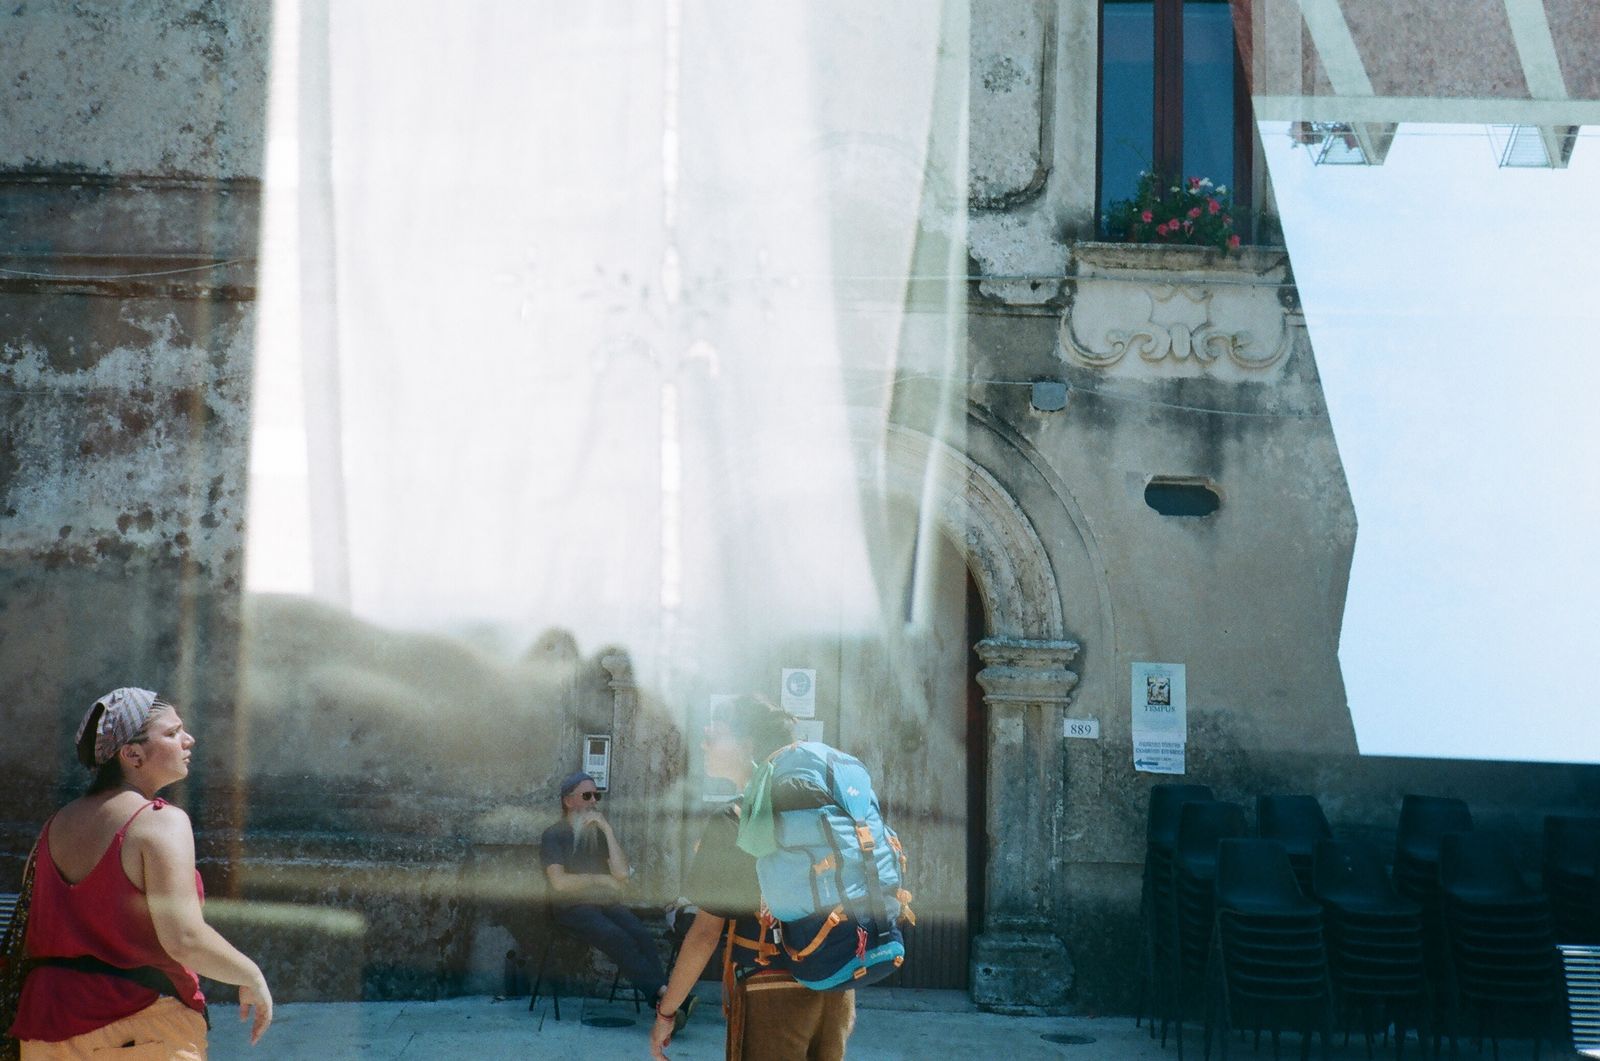 © Susanna Durante - Image from the ALLA FINE DEL SOGNO photography project